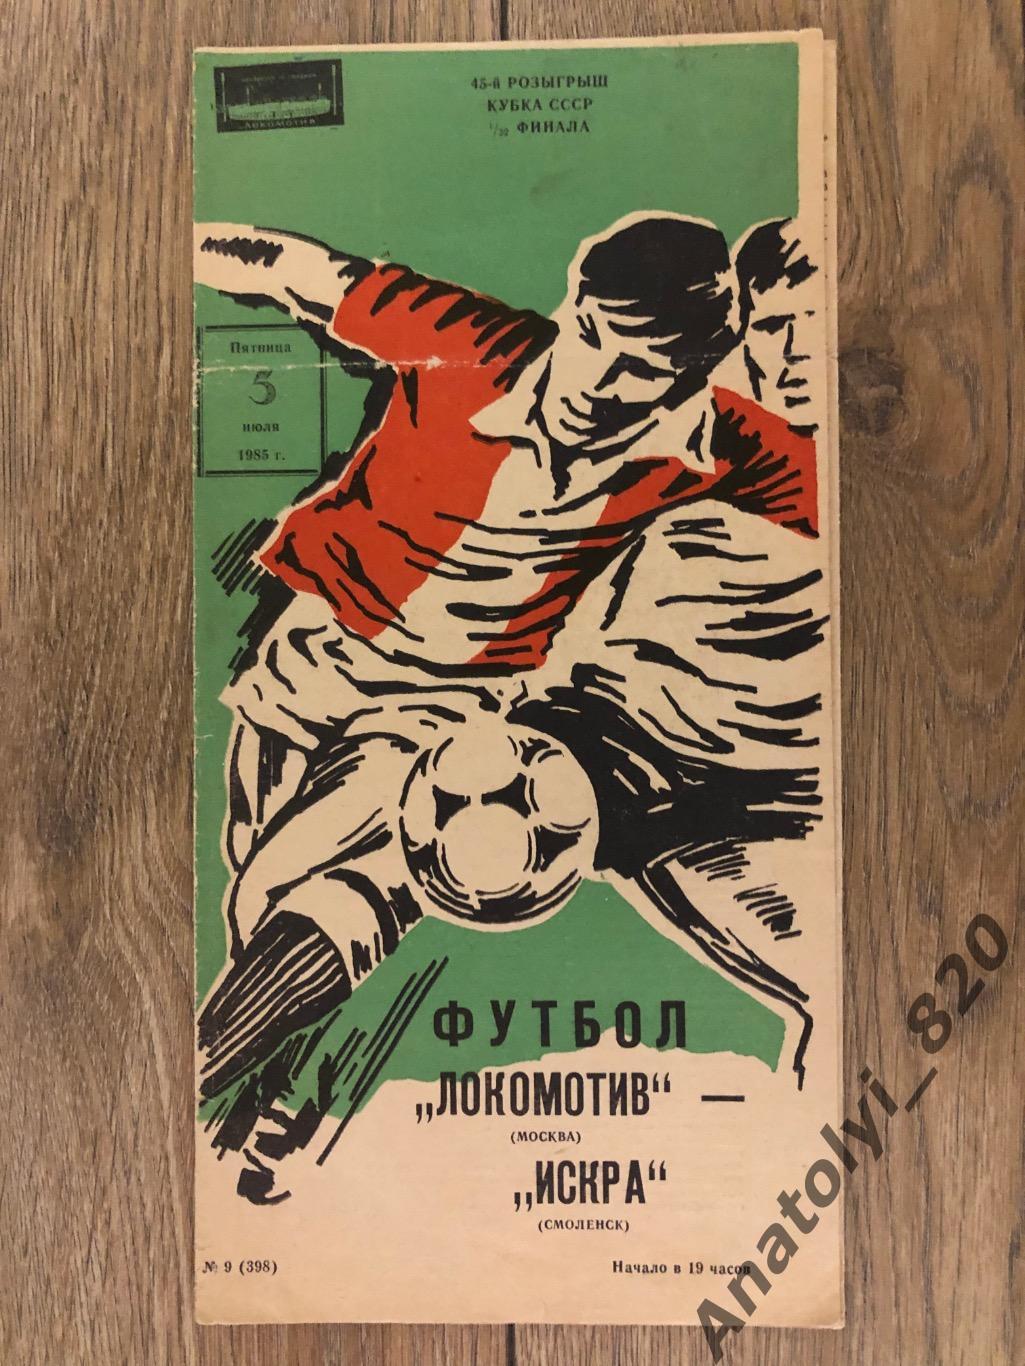 Локомотив Москва - Искра Смоленск, кубок 1985 год